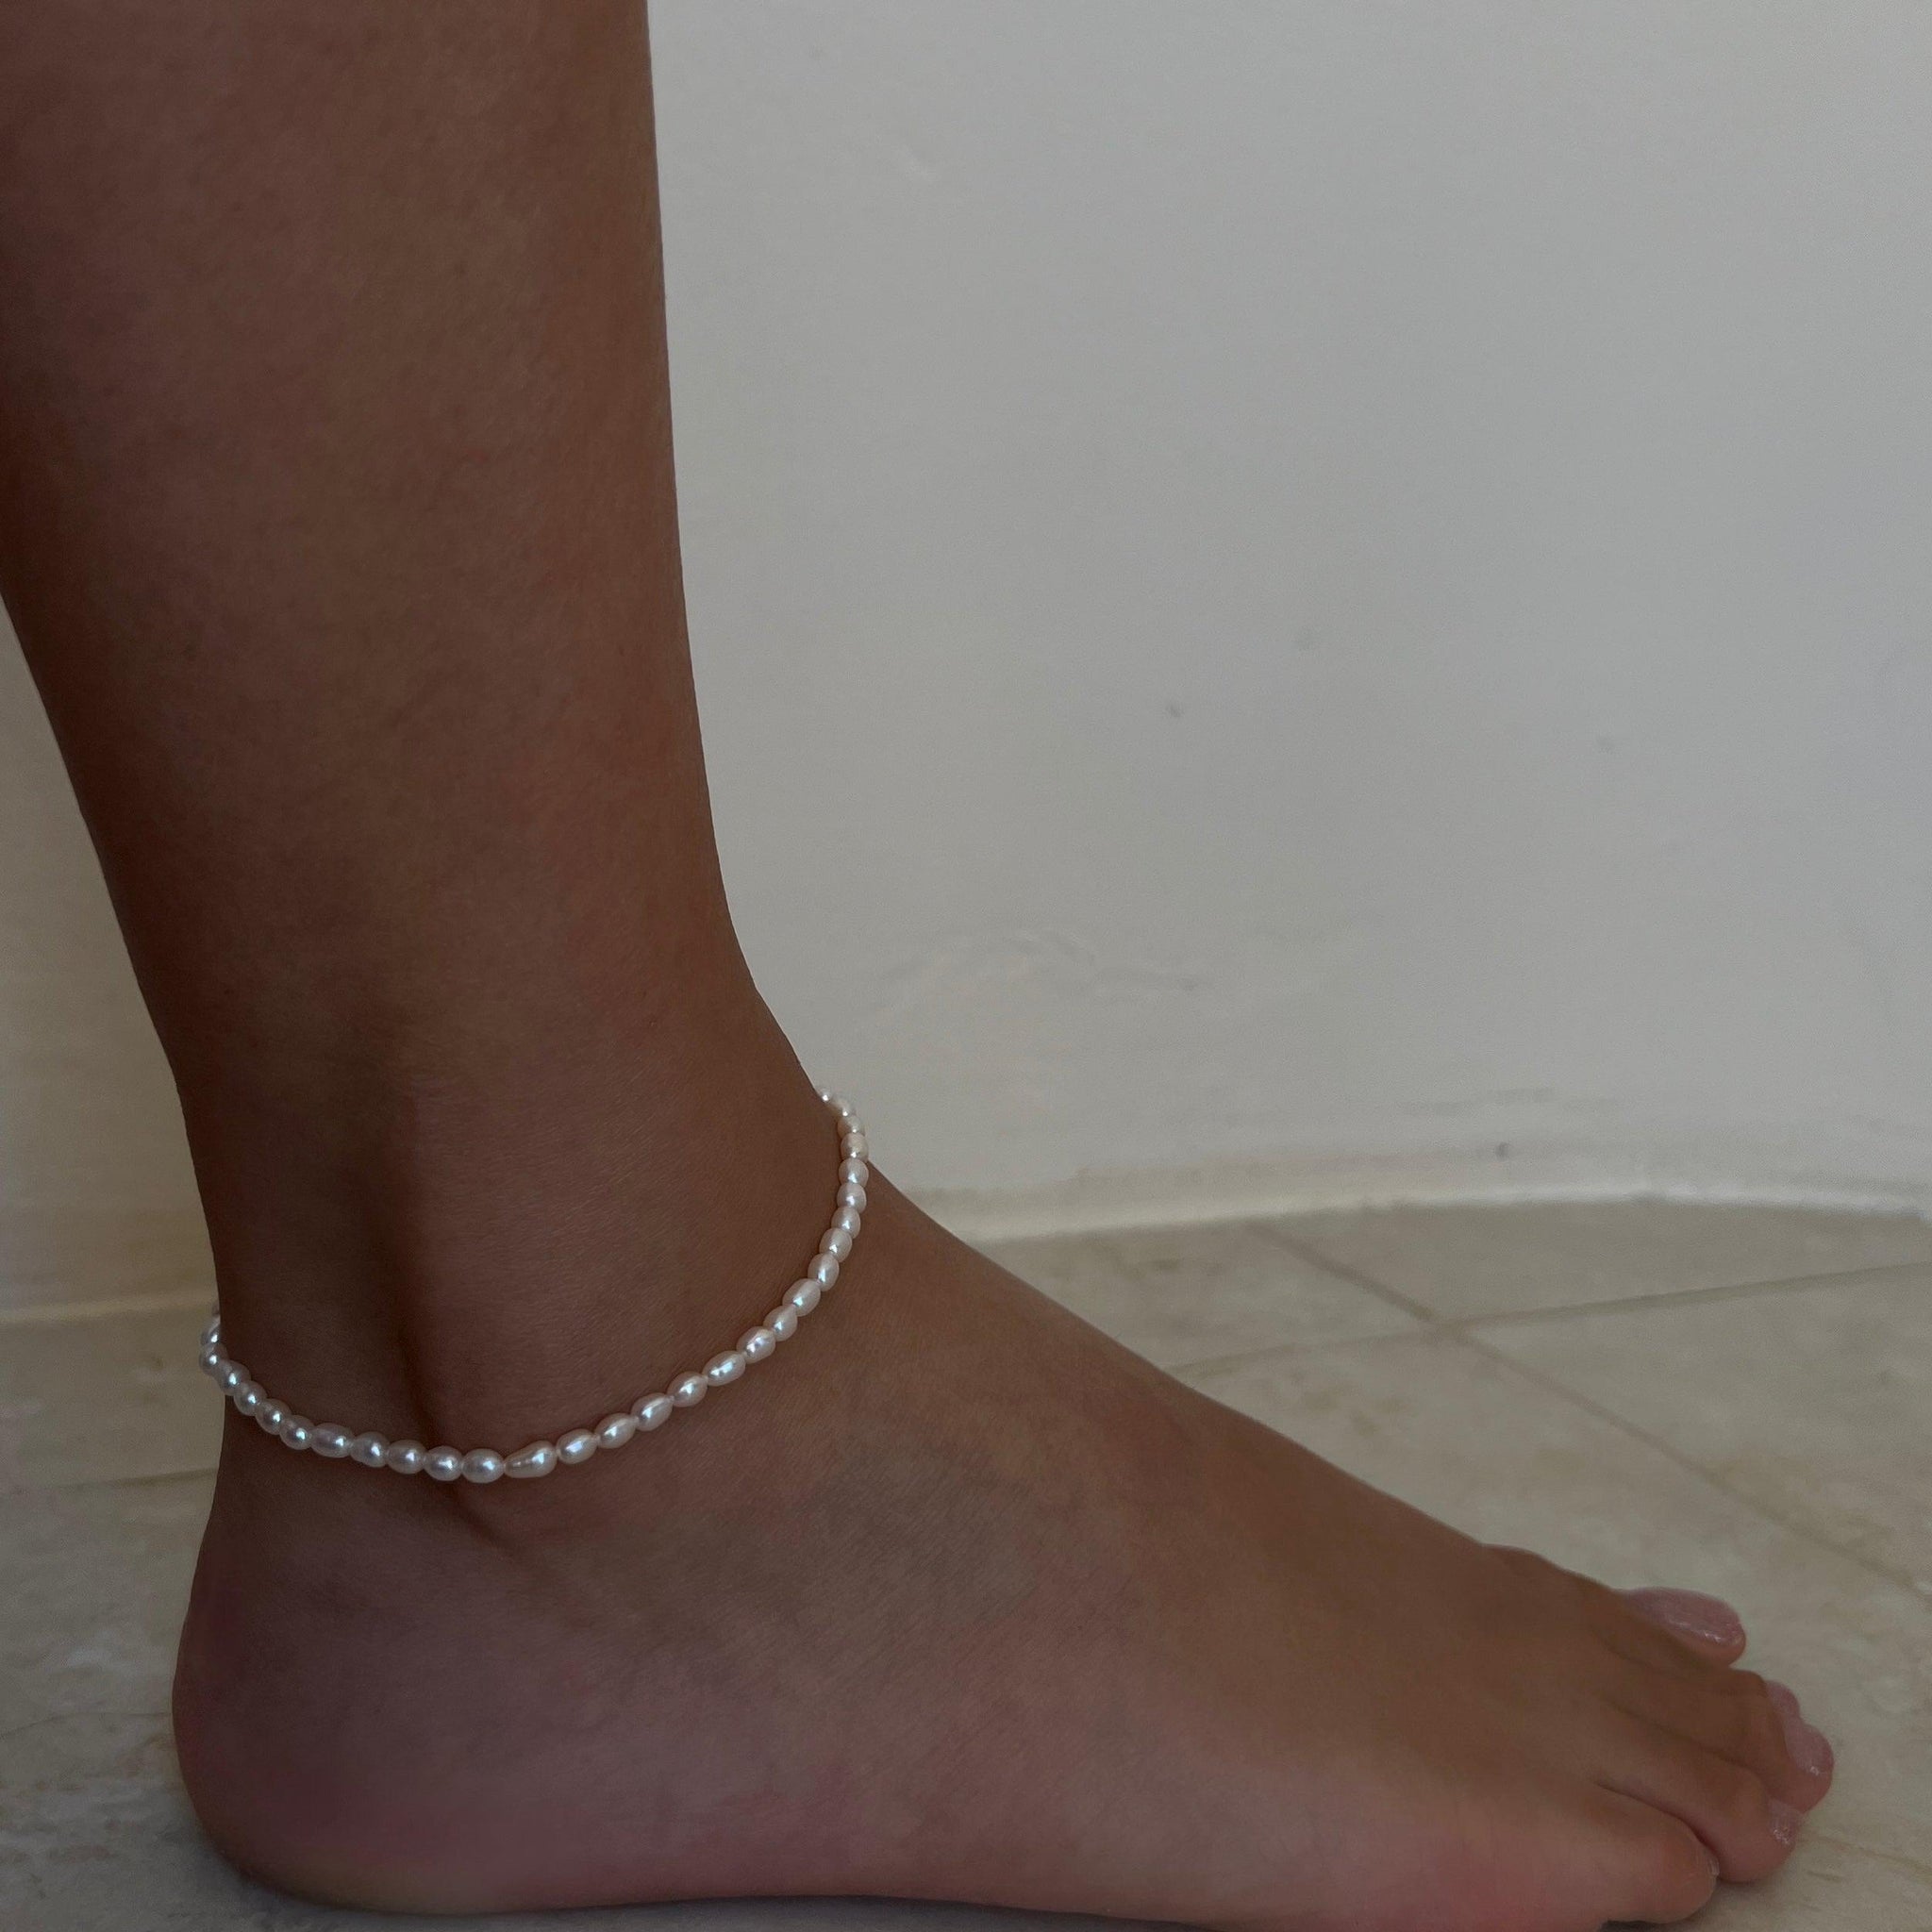 S Bracelets Y ® A O – Anklets E I & R L